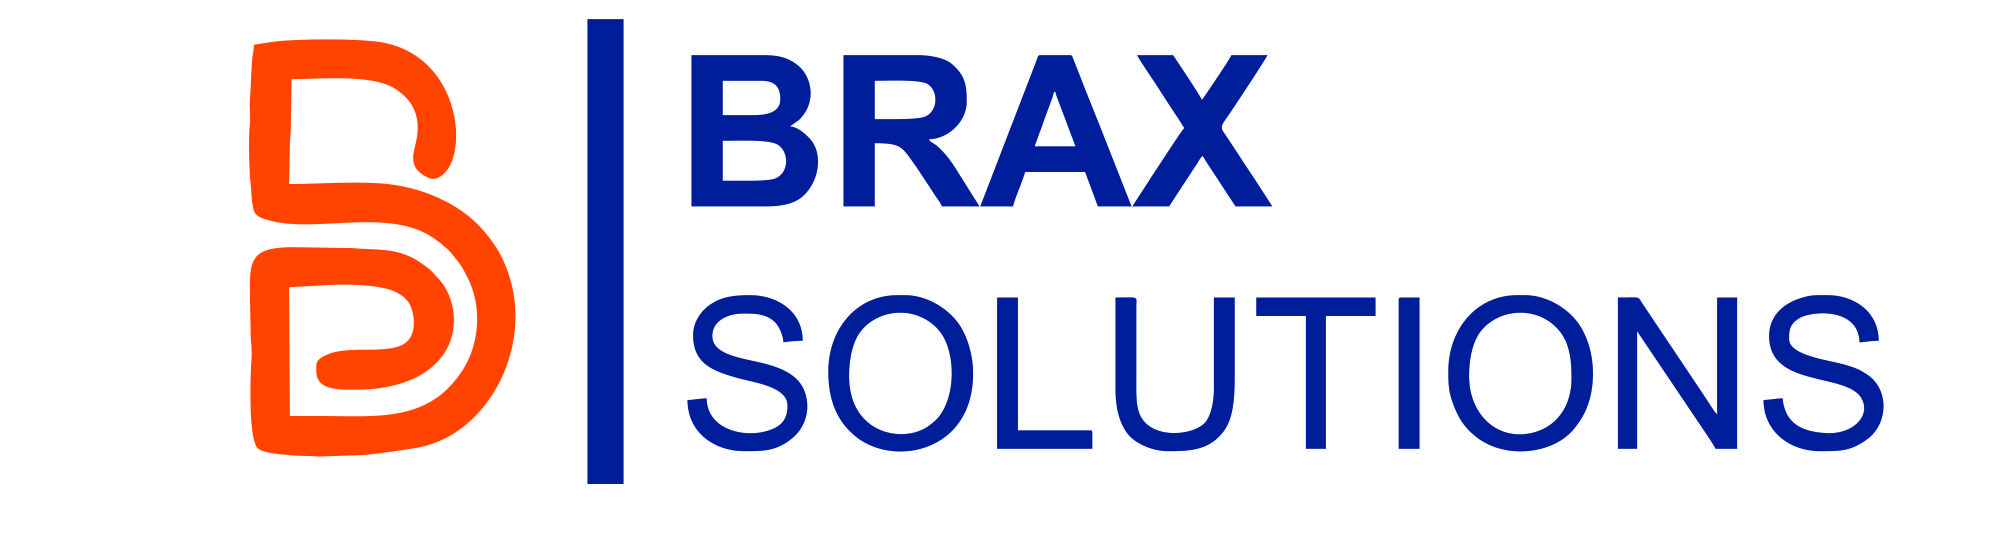 BRAX SOLUTIONS provider